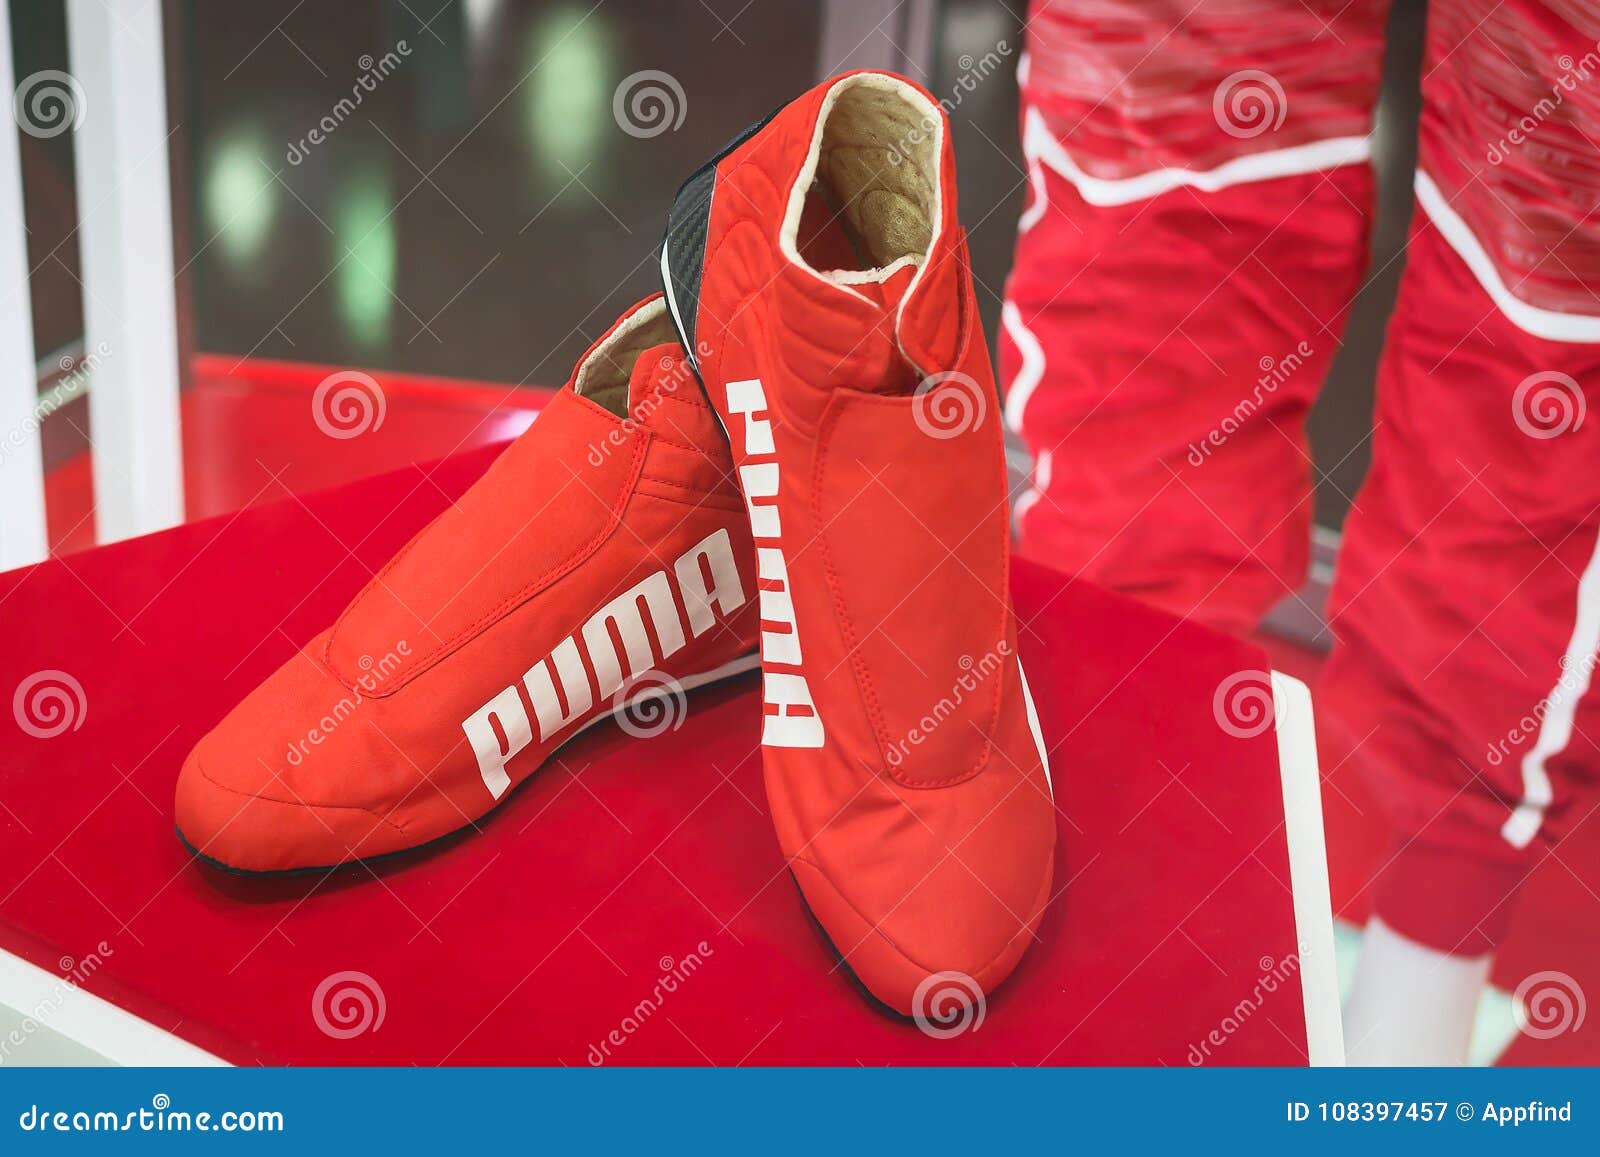 puma racing sneakers